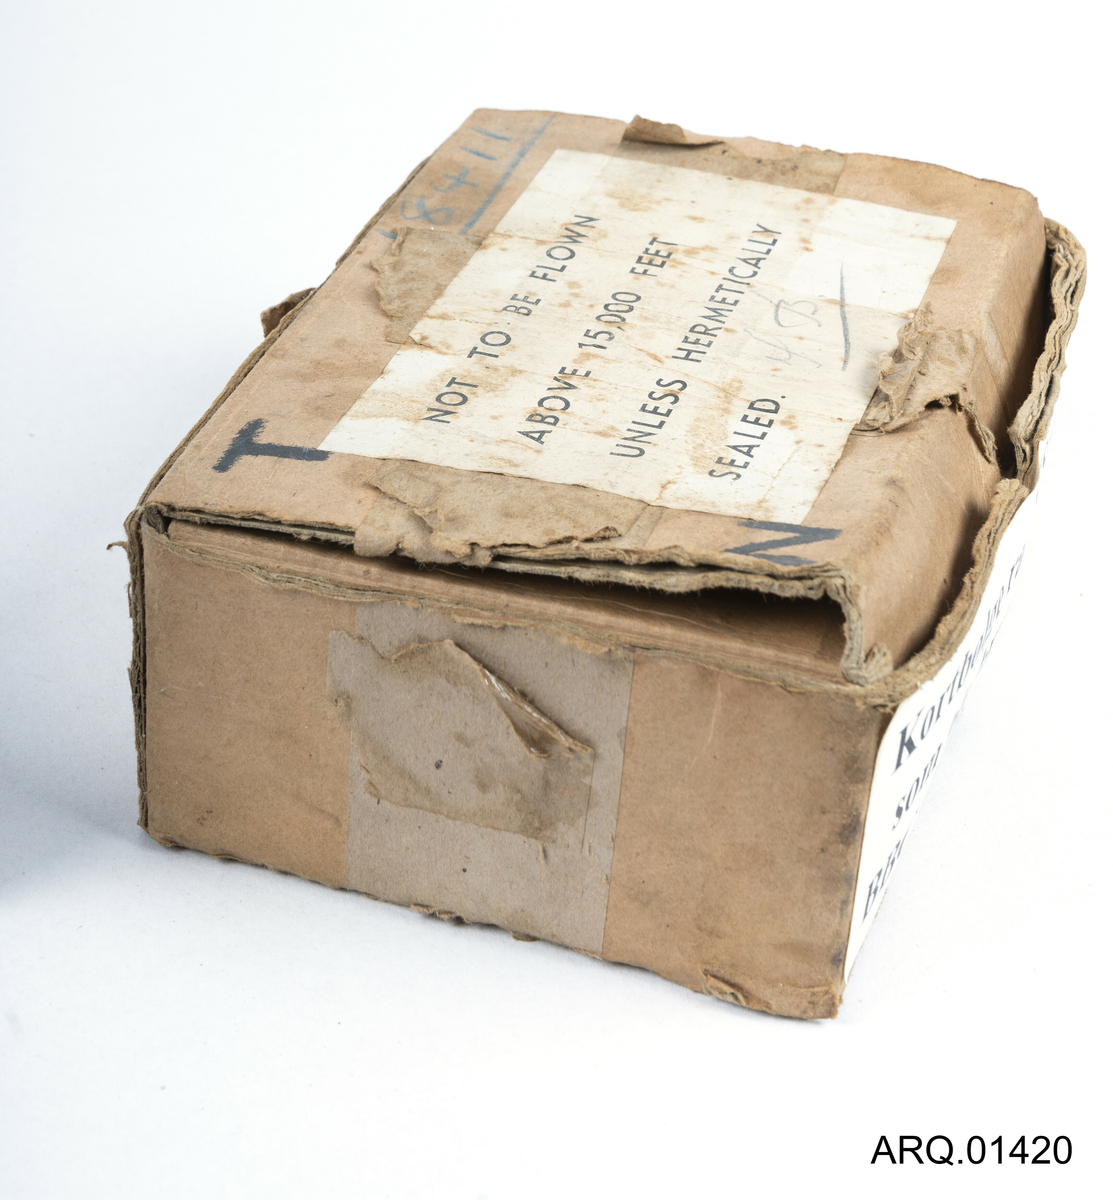 Eske/Emballasje for radiosender "Sweetheart" Det står en tekst på etiketten om at en ikke må fly over 15,000 fot uten at radiosenderen er hermetisk pakket.